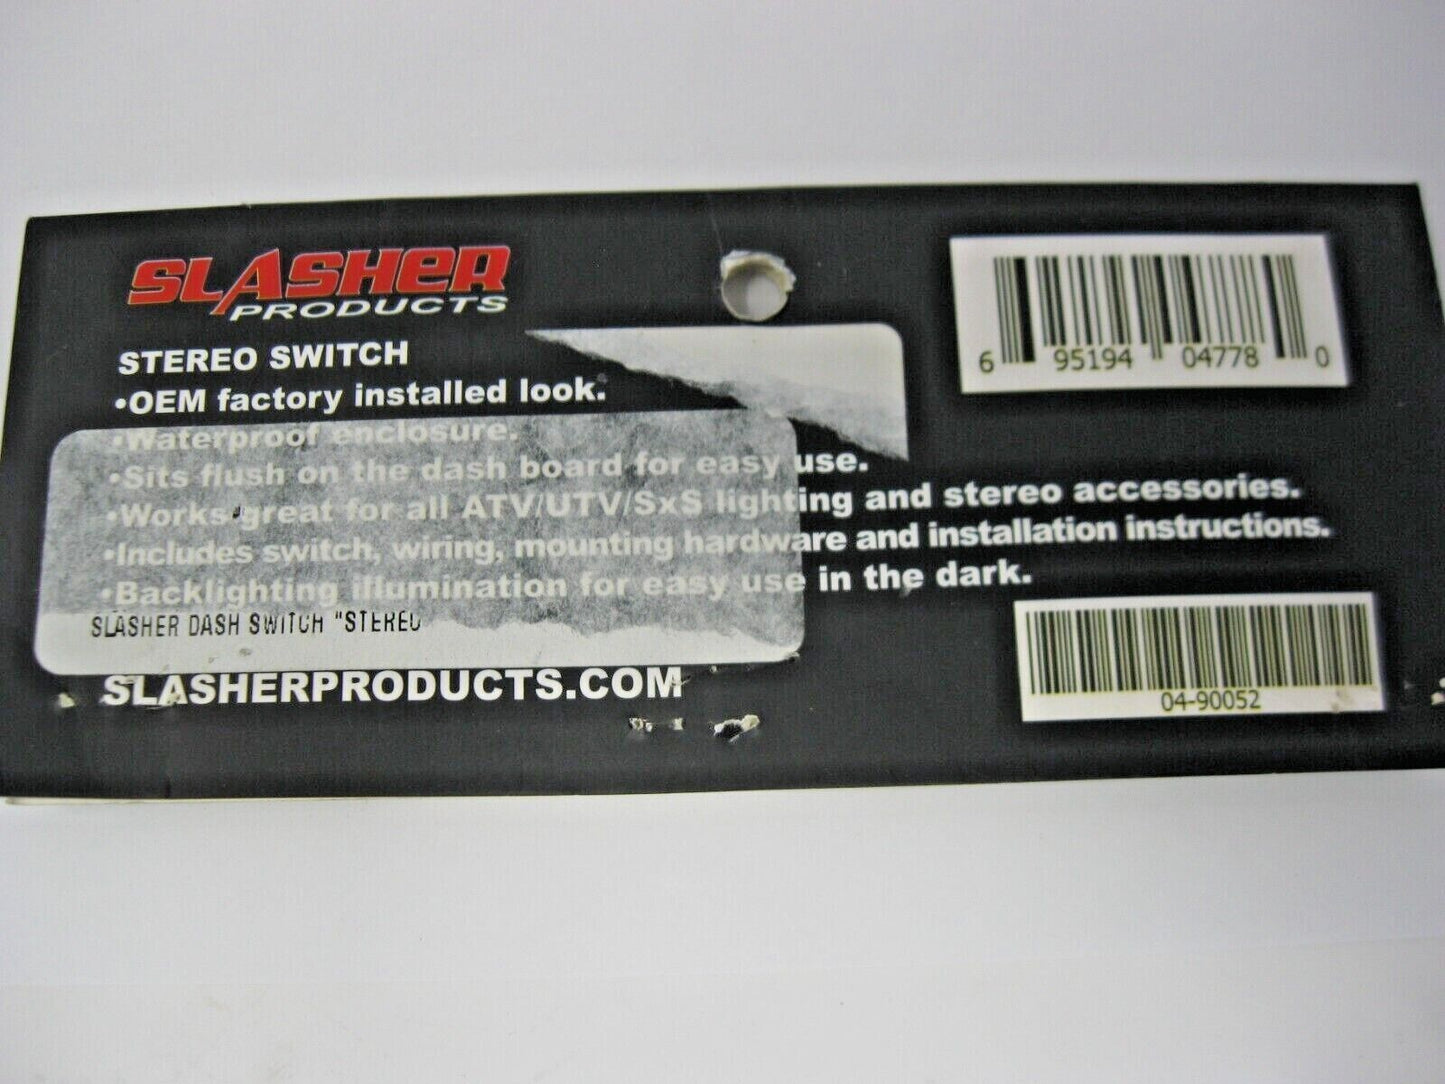 SLASHER Products ATV/UTV Stereo Dash Switch 04-90052